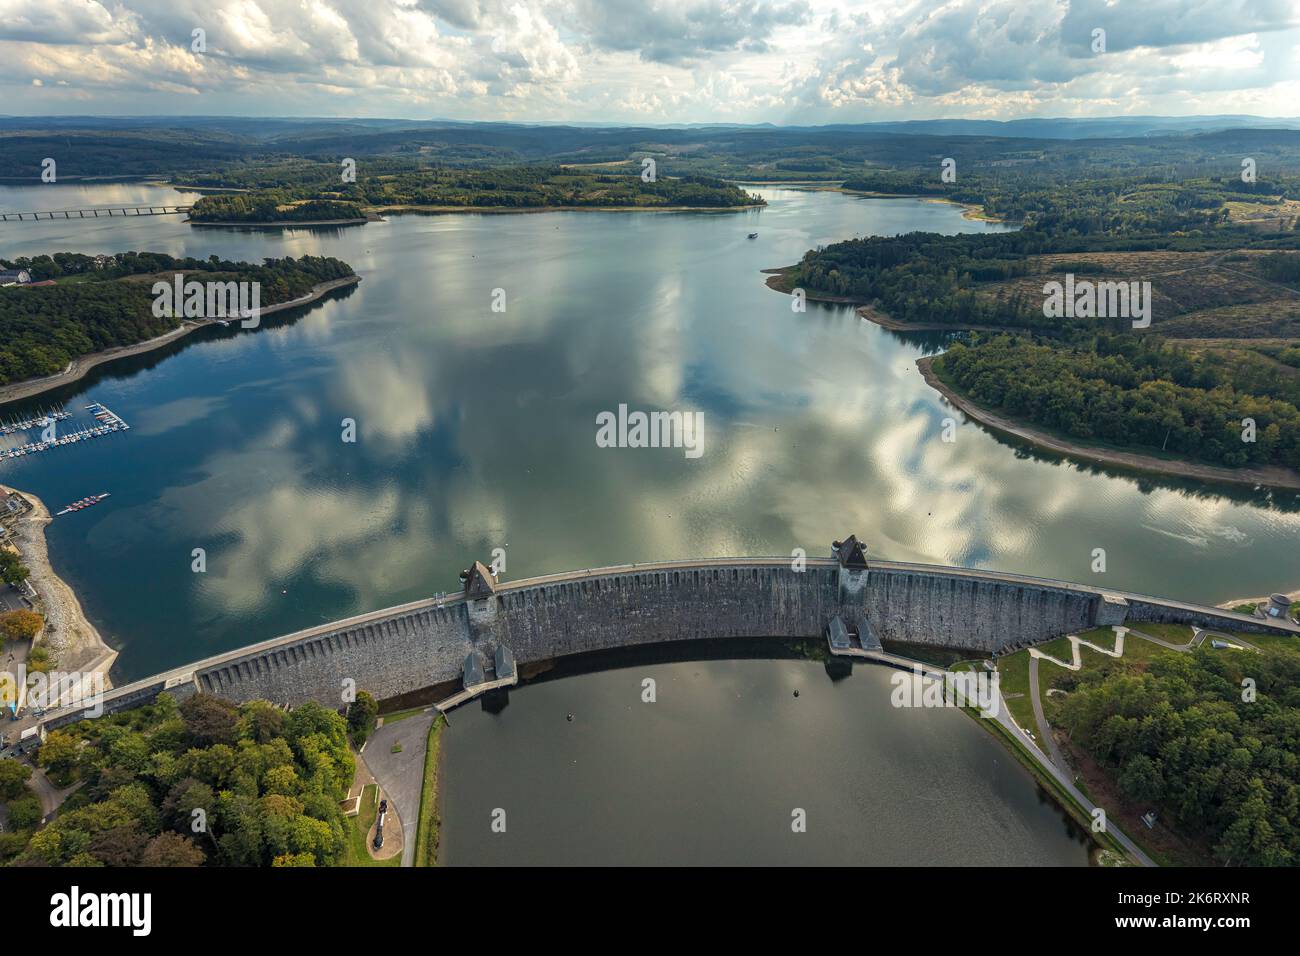 Vue aérienne, barrage de Möhne, reflet des nuages dans le lac de Möhne, Günne, lac de Möhne, pays aigre, Rhénanie-du-Nord-Westphalie, Allemagne, DE, Europe, photographie aérienne Banque D'Images